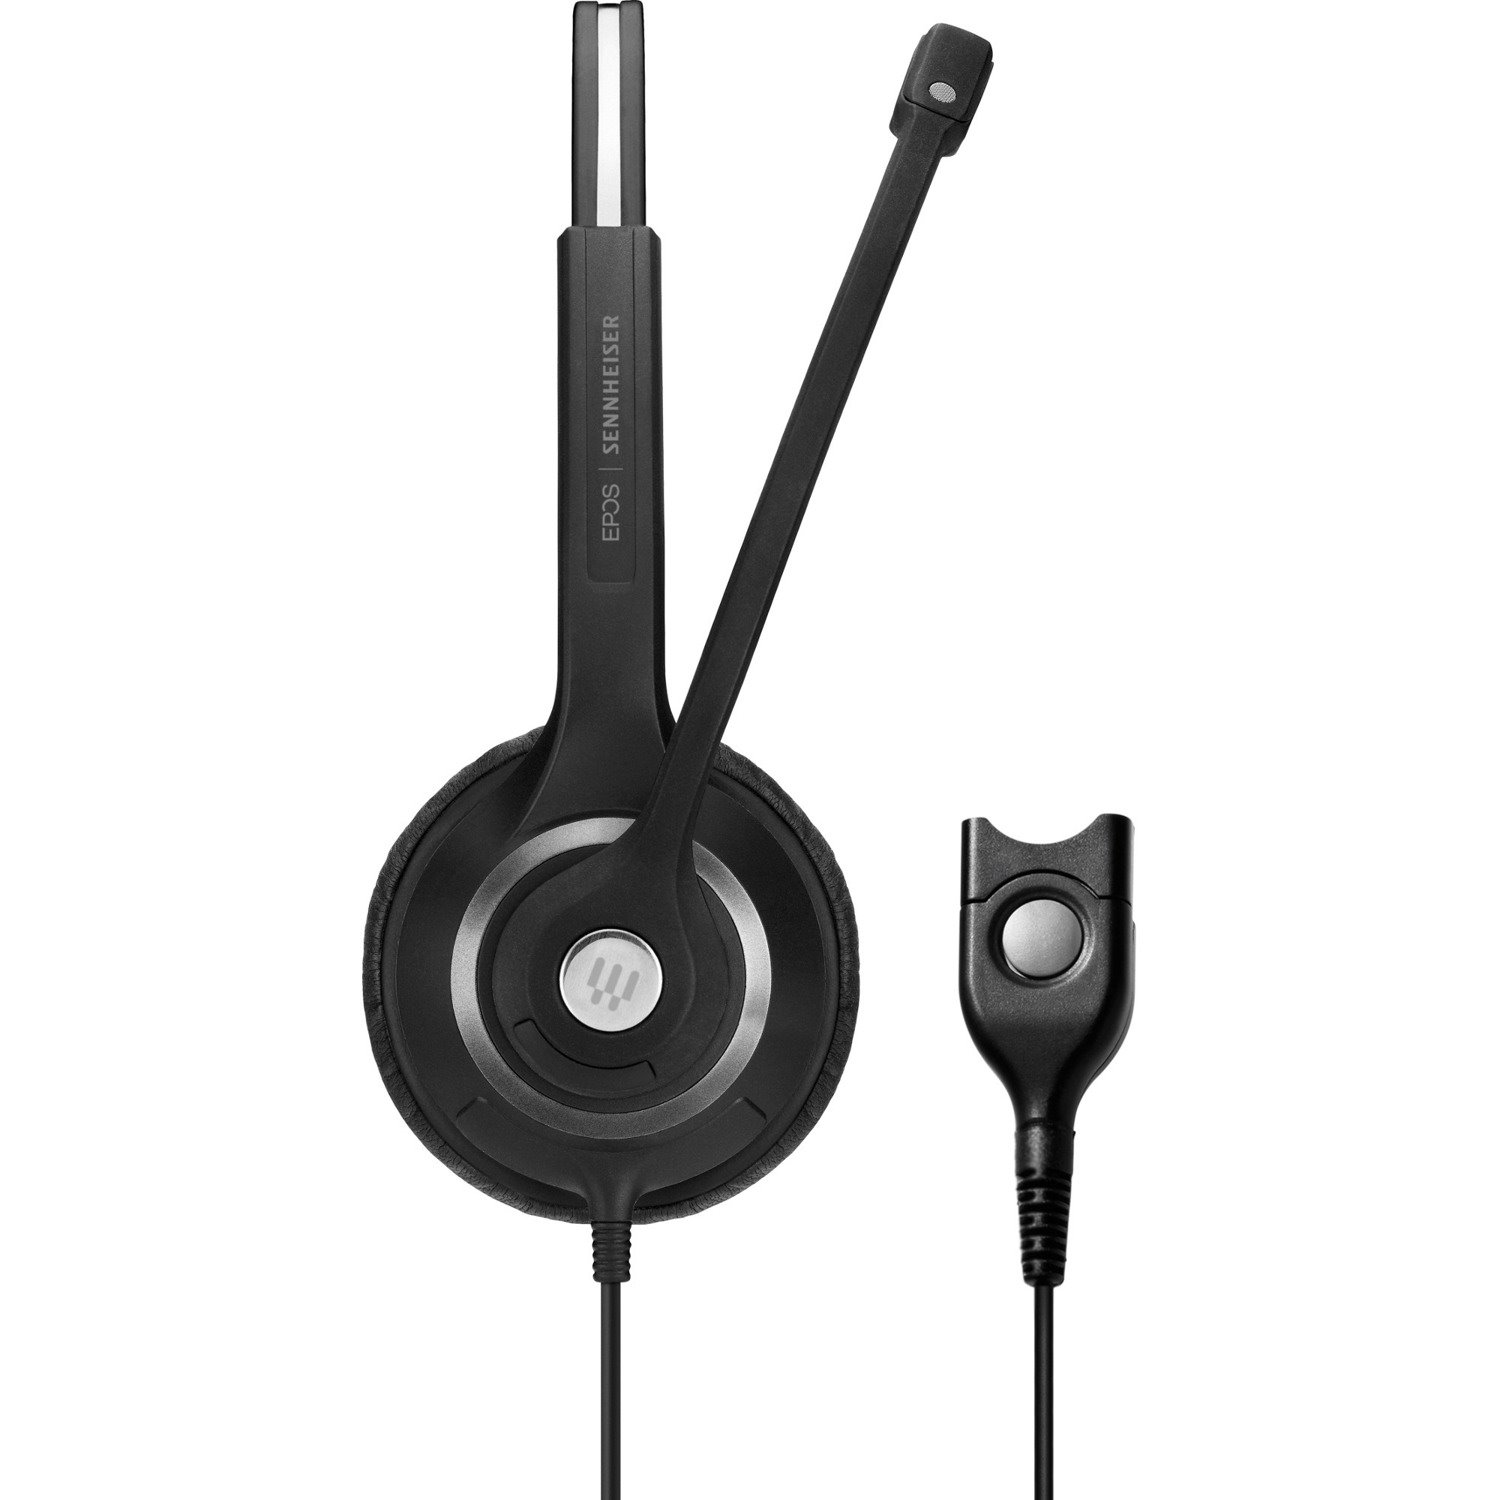 EPOS IMPACT SC 230 Wired On-ear Mono Headset - Black